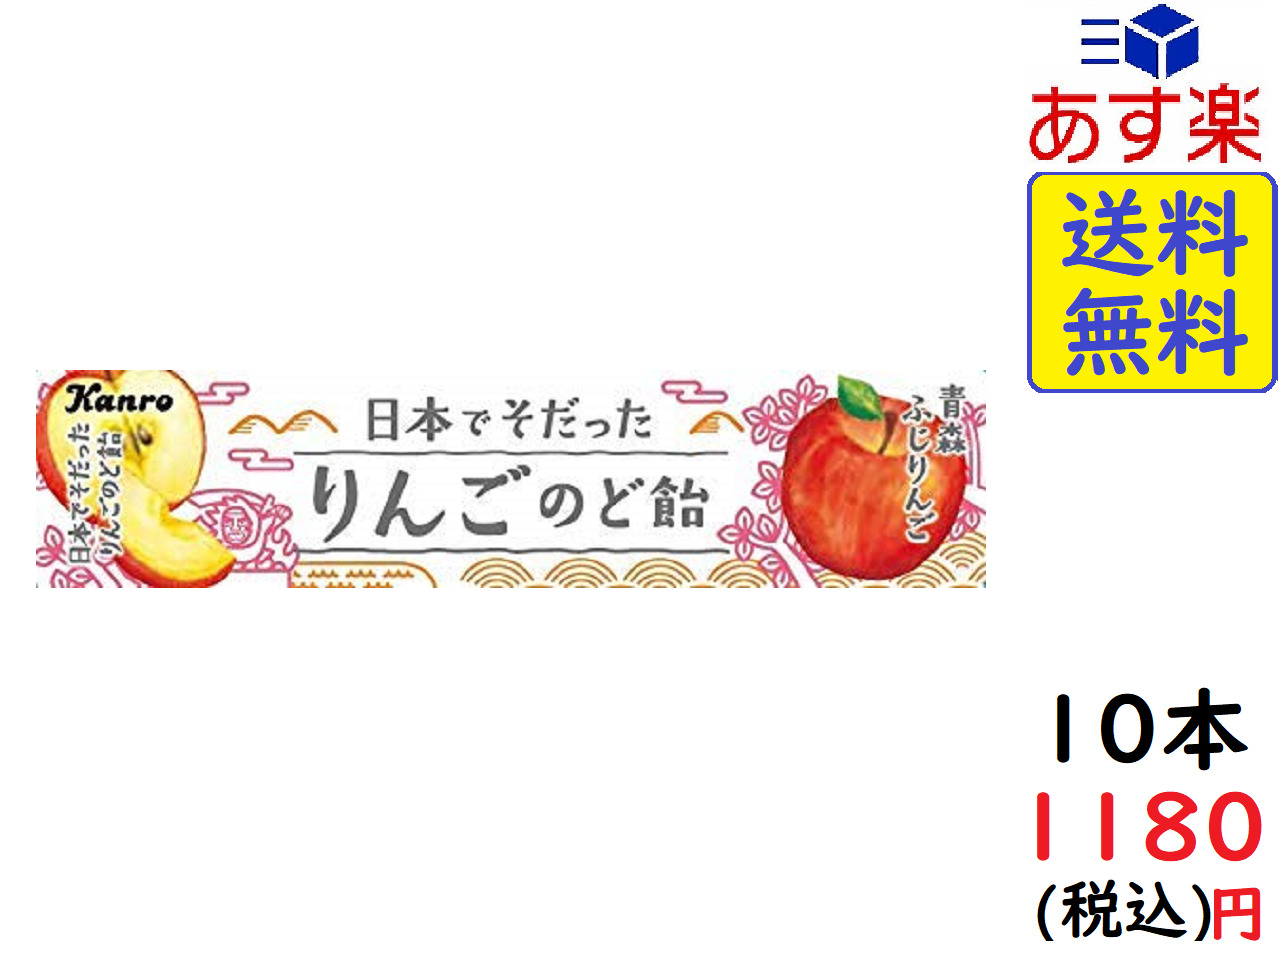 楽天市場 カンロ 日本でそだったりんごのど飴 11粒 10本 賞味期限 12 Exicoast Internet Store 2号店